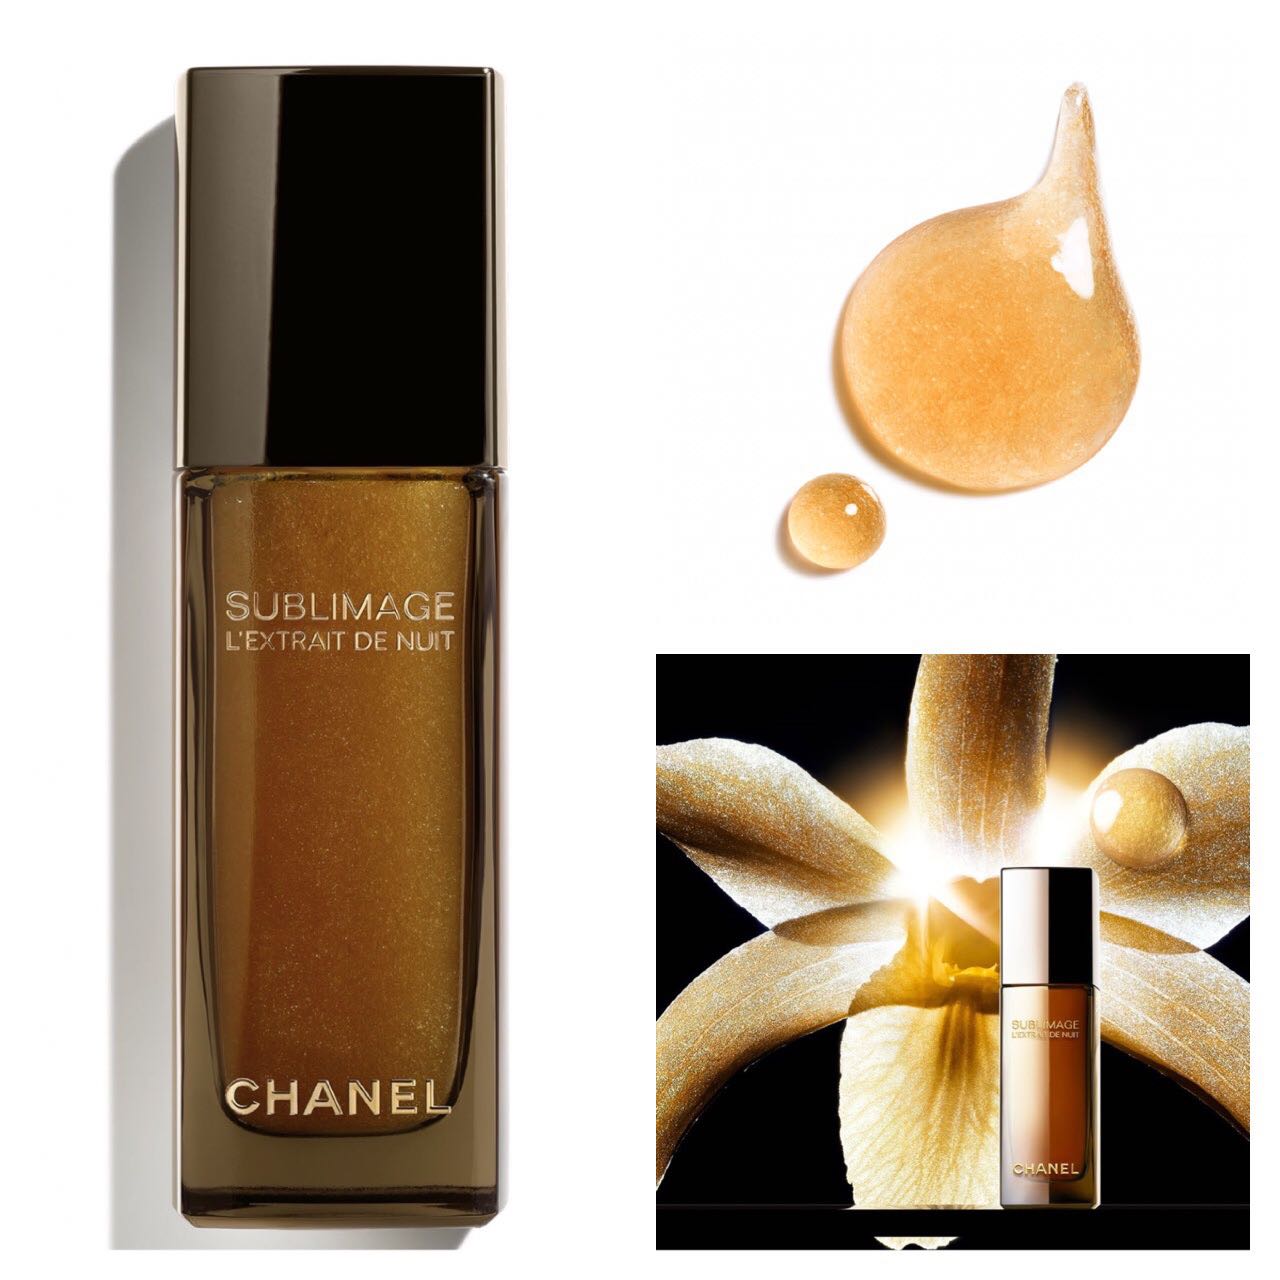 Chanel Sublimage L'Extrait Crème buy online - India